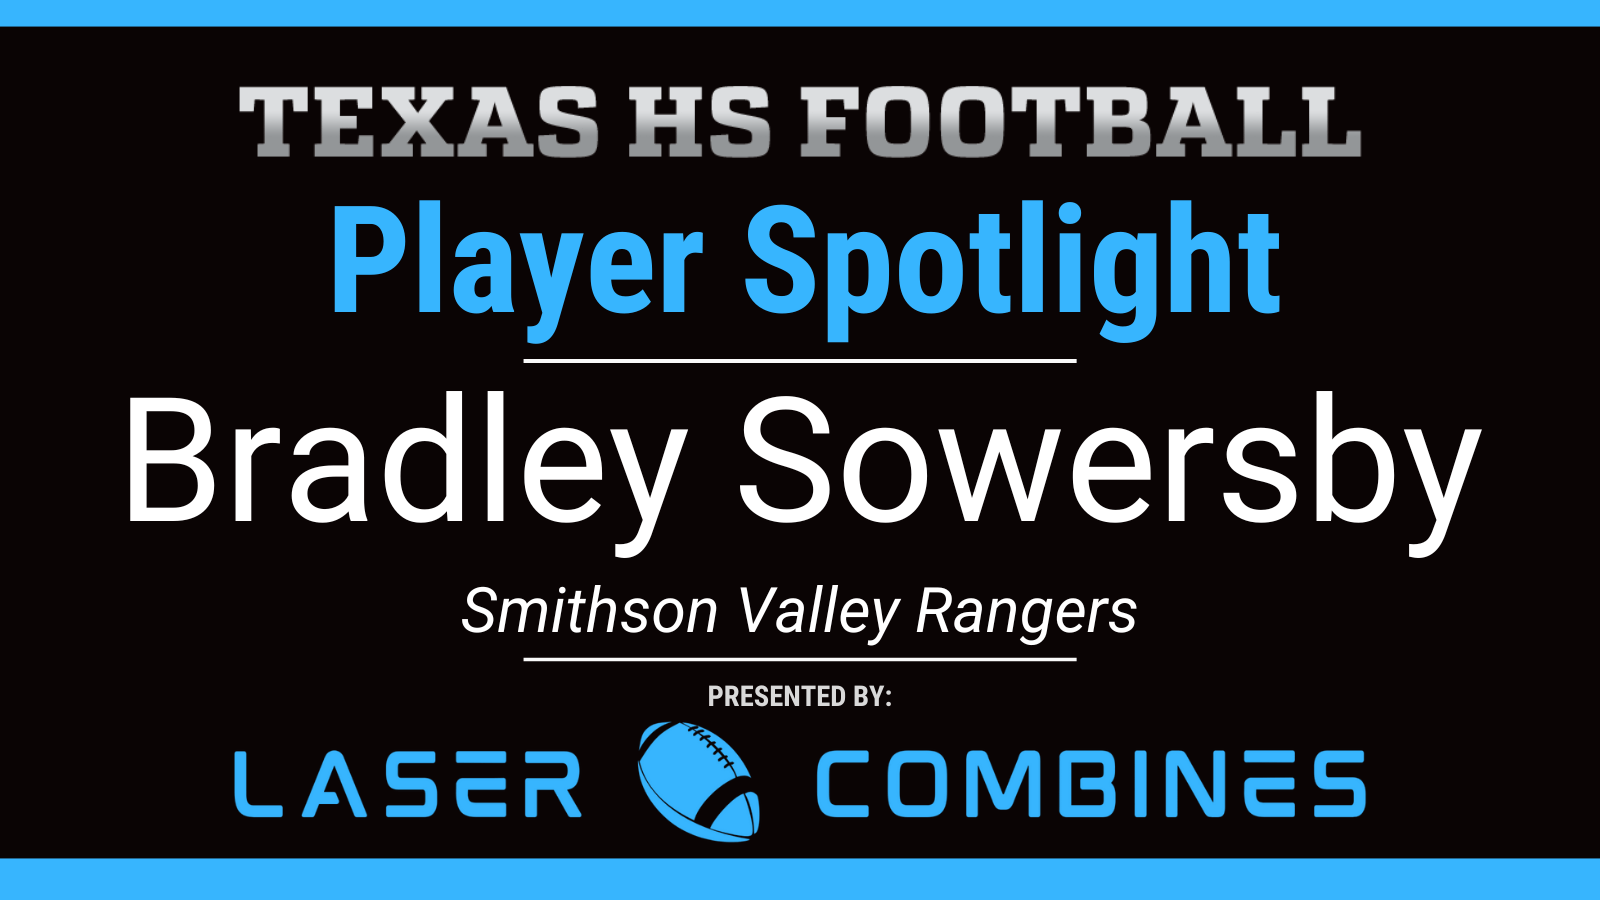 Player Spotlight: Bradley Sowersby, Smithson Valley Rangers